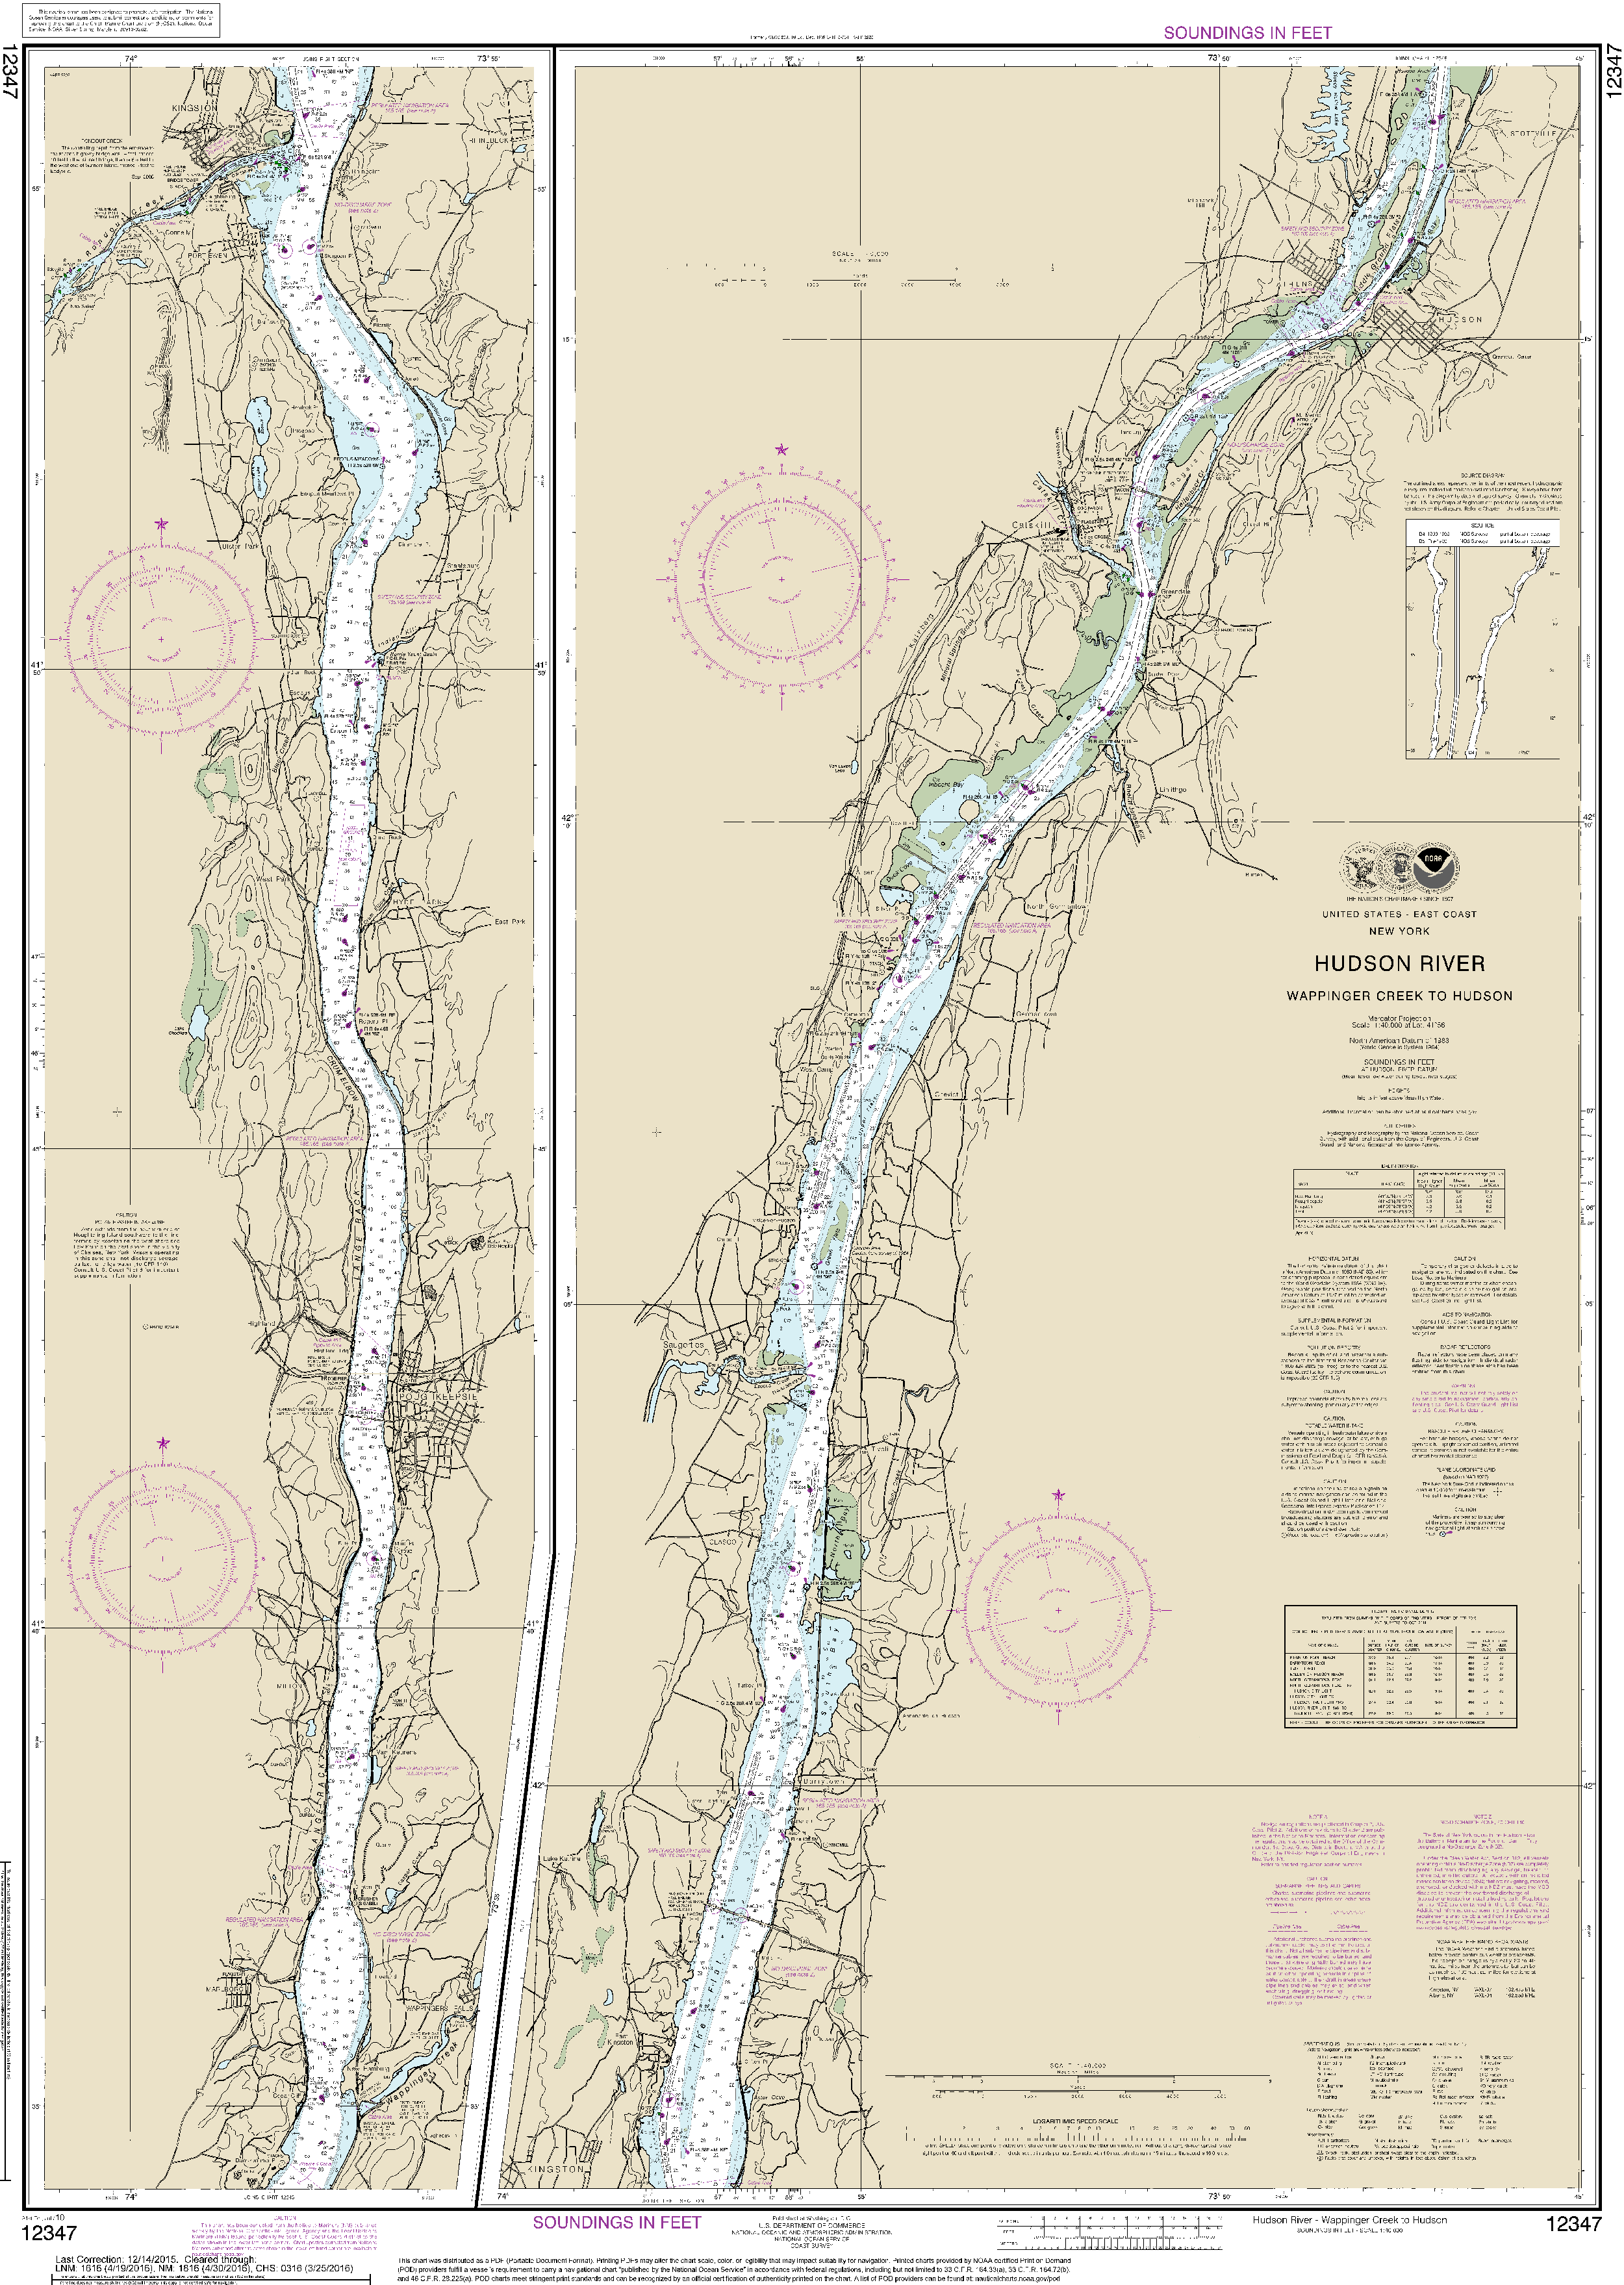 NOAA Nautical Chart 12347: Hudson River Wappinger Creek to Hudson